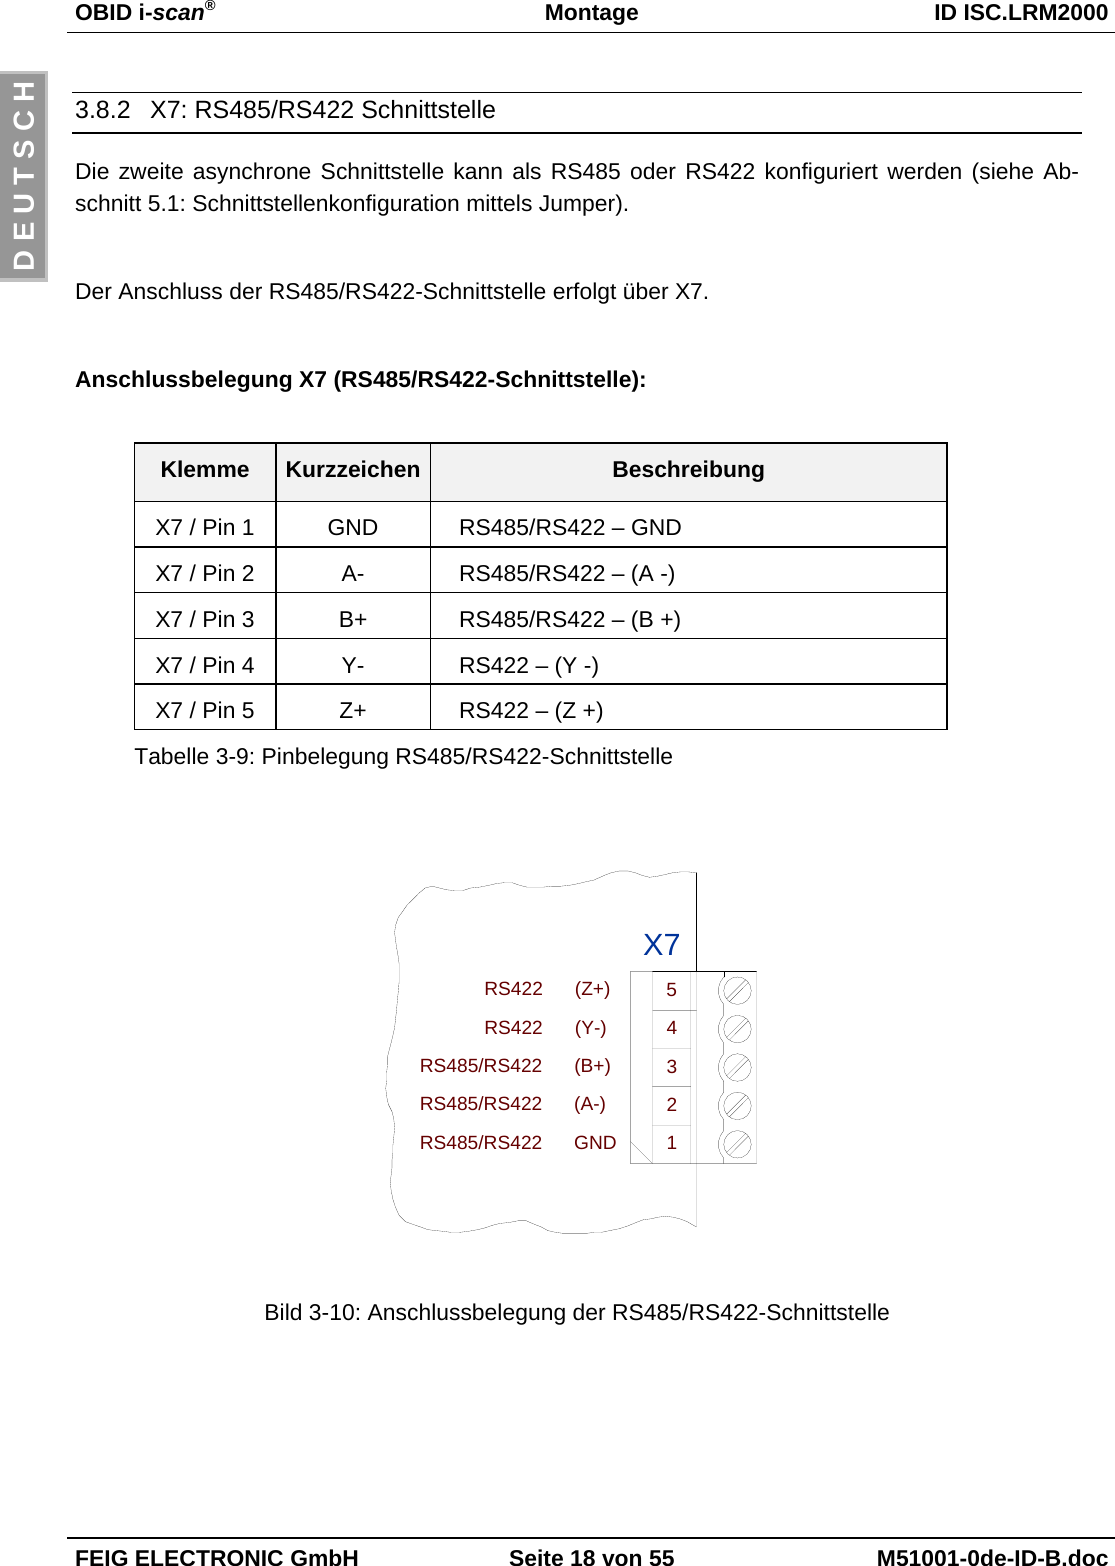 OBID i-scan®Montage ID ISC.LRM2000FEIG ELECTRONIC GmbH Seite 18 von 55 M51001-0de-ID-B.docD E U T S C H3.8.2  X7: RS485/RS422 SchnittstelleDie zweite asynchrone Schnittstelle kann als RS485 oder RS422 konfiguriert werden (siehe Ab-schnitt 5.1: Schnittstellenkonfiguration mittels Jumper). Der Anschluss der RS485/RS422-Schnittstelle erfolgt über X7.Anschlussbelegung X7 (RS485/RS422-Schnittstelle):Klemme Kurzzeichen BeschreibungX7 / Pin 1 GND RS485/RS422 – GNDX7 / Pin 2 A- RS485/RS422 – (A -)X7 / Pin 3 B+ RS485/RS422 – (B +)X7 / Pin 4 Y- RS422 – (Y -)X7 / Pin 5 Z+ RS422 – (Z +)Tabelle 3-9: Pinbelegung RS485/RS422-SchnittstelleBild 3-10: Anschlussbelegung der RS485/RS422-SchnittstelleRS422      (Z+)RS422      (Y-)5RS485/RS422      (A-)RS485/RS422      GNDRS485/RS422      (B+)1243X7